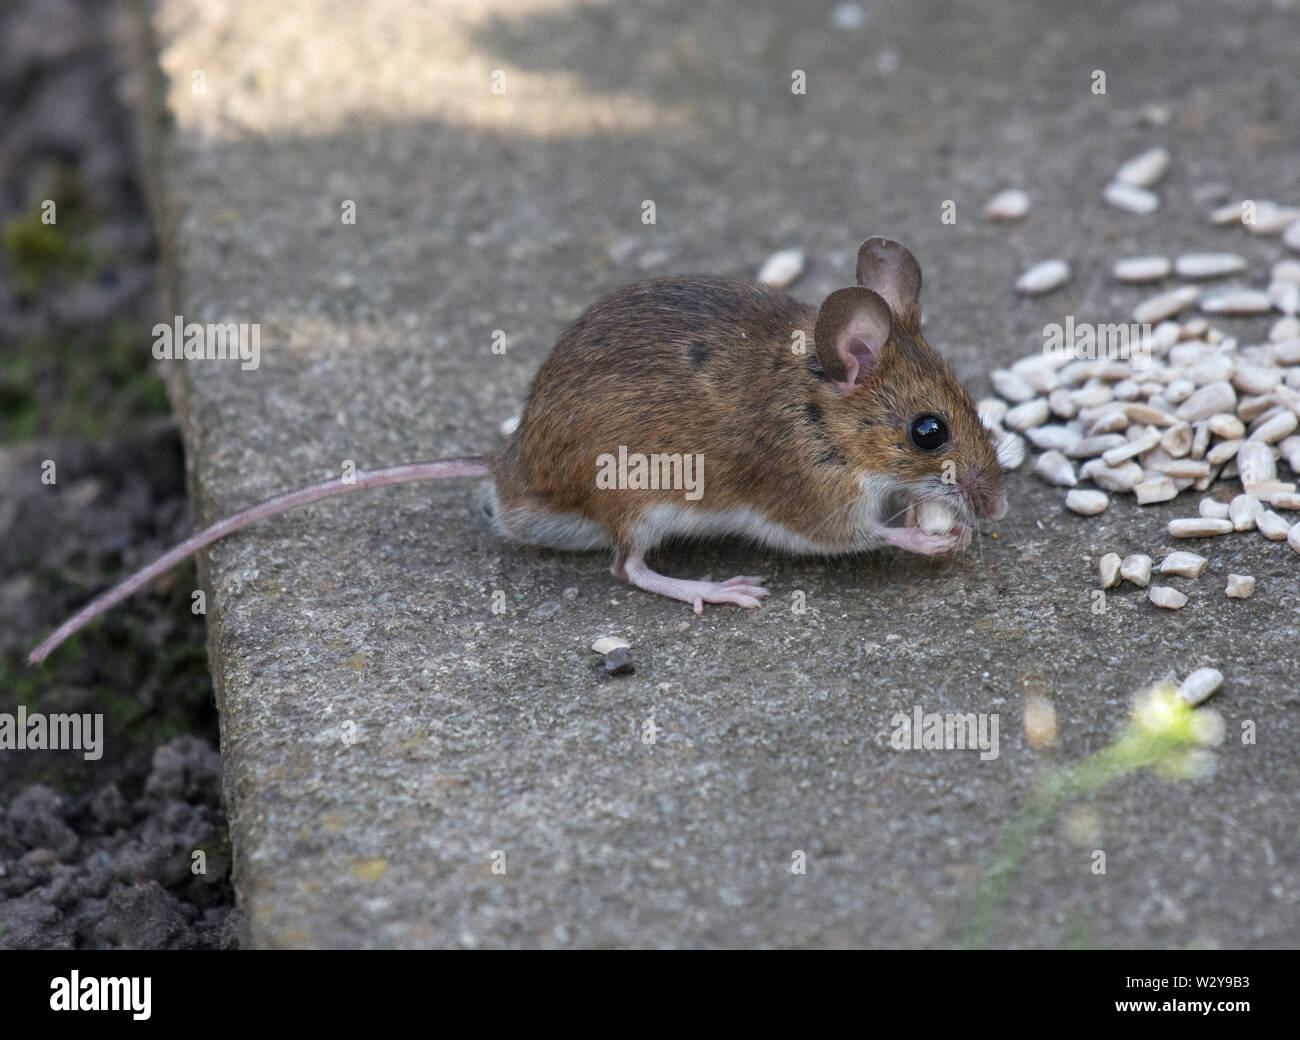 Mouse di legno, Apodemus sylvaticus, mangiare semi, Lancashire, Regno Unito Foto Stock